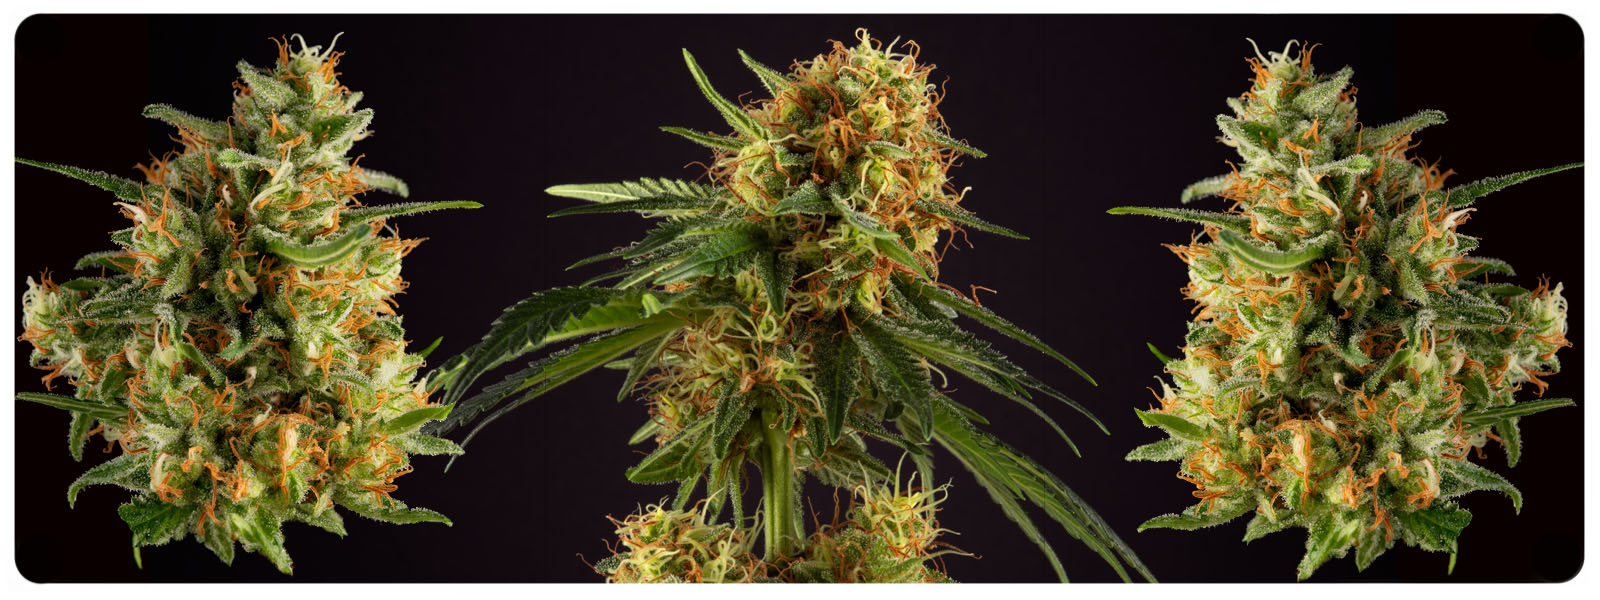 Reguliere madscientist cannabis zaden voor medicinaal gebruik